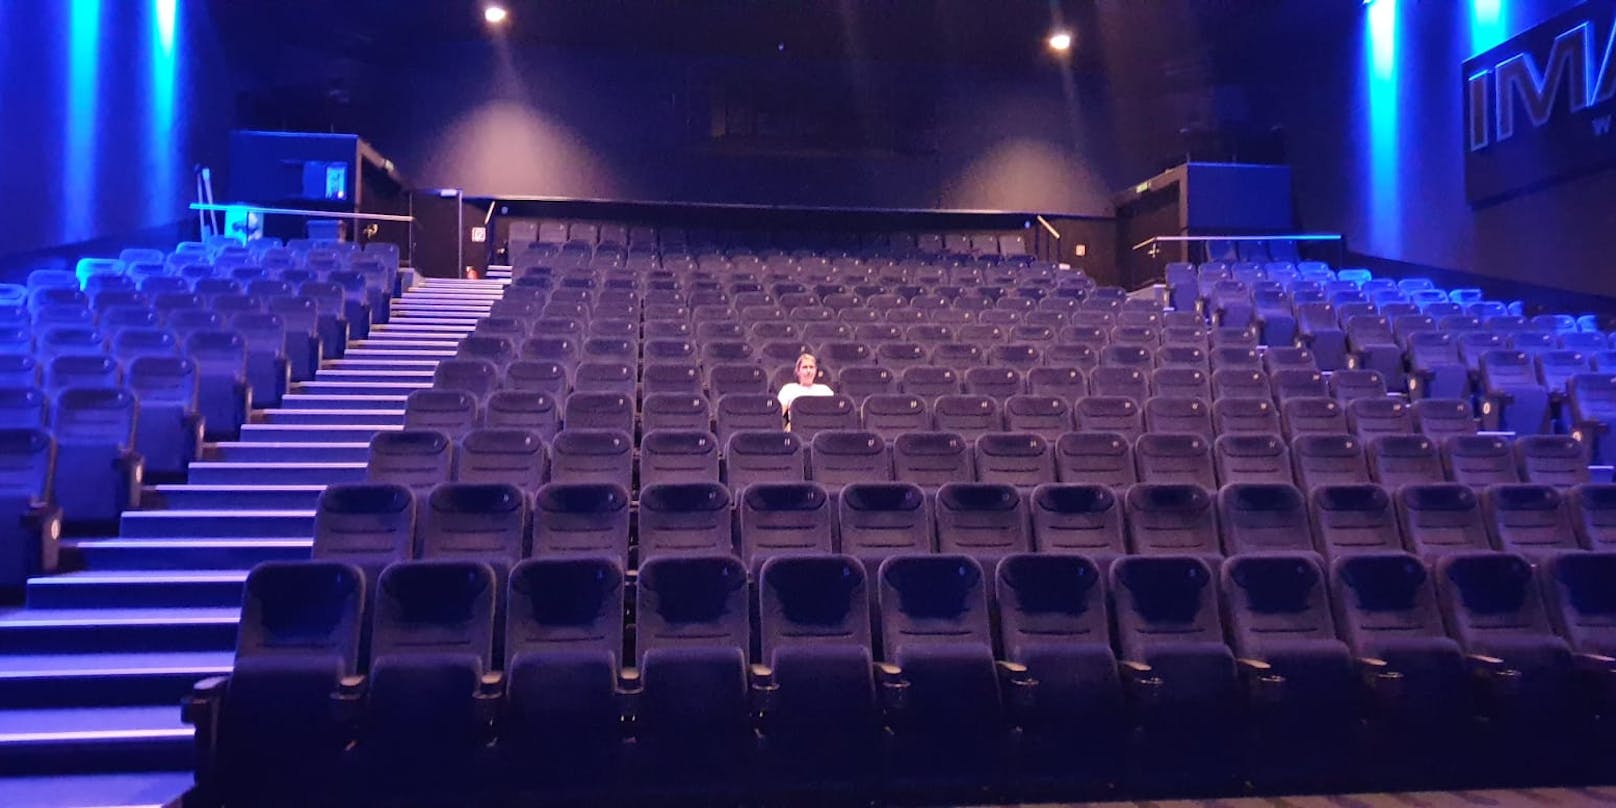 So leer bleiben die Kinos ab Mittwoch nicht mehr!